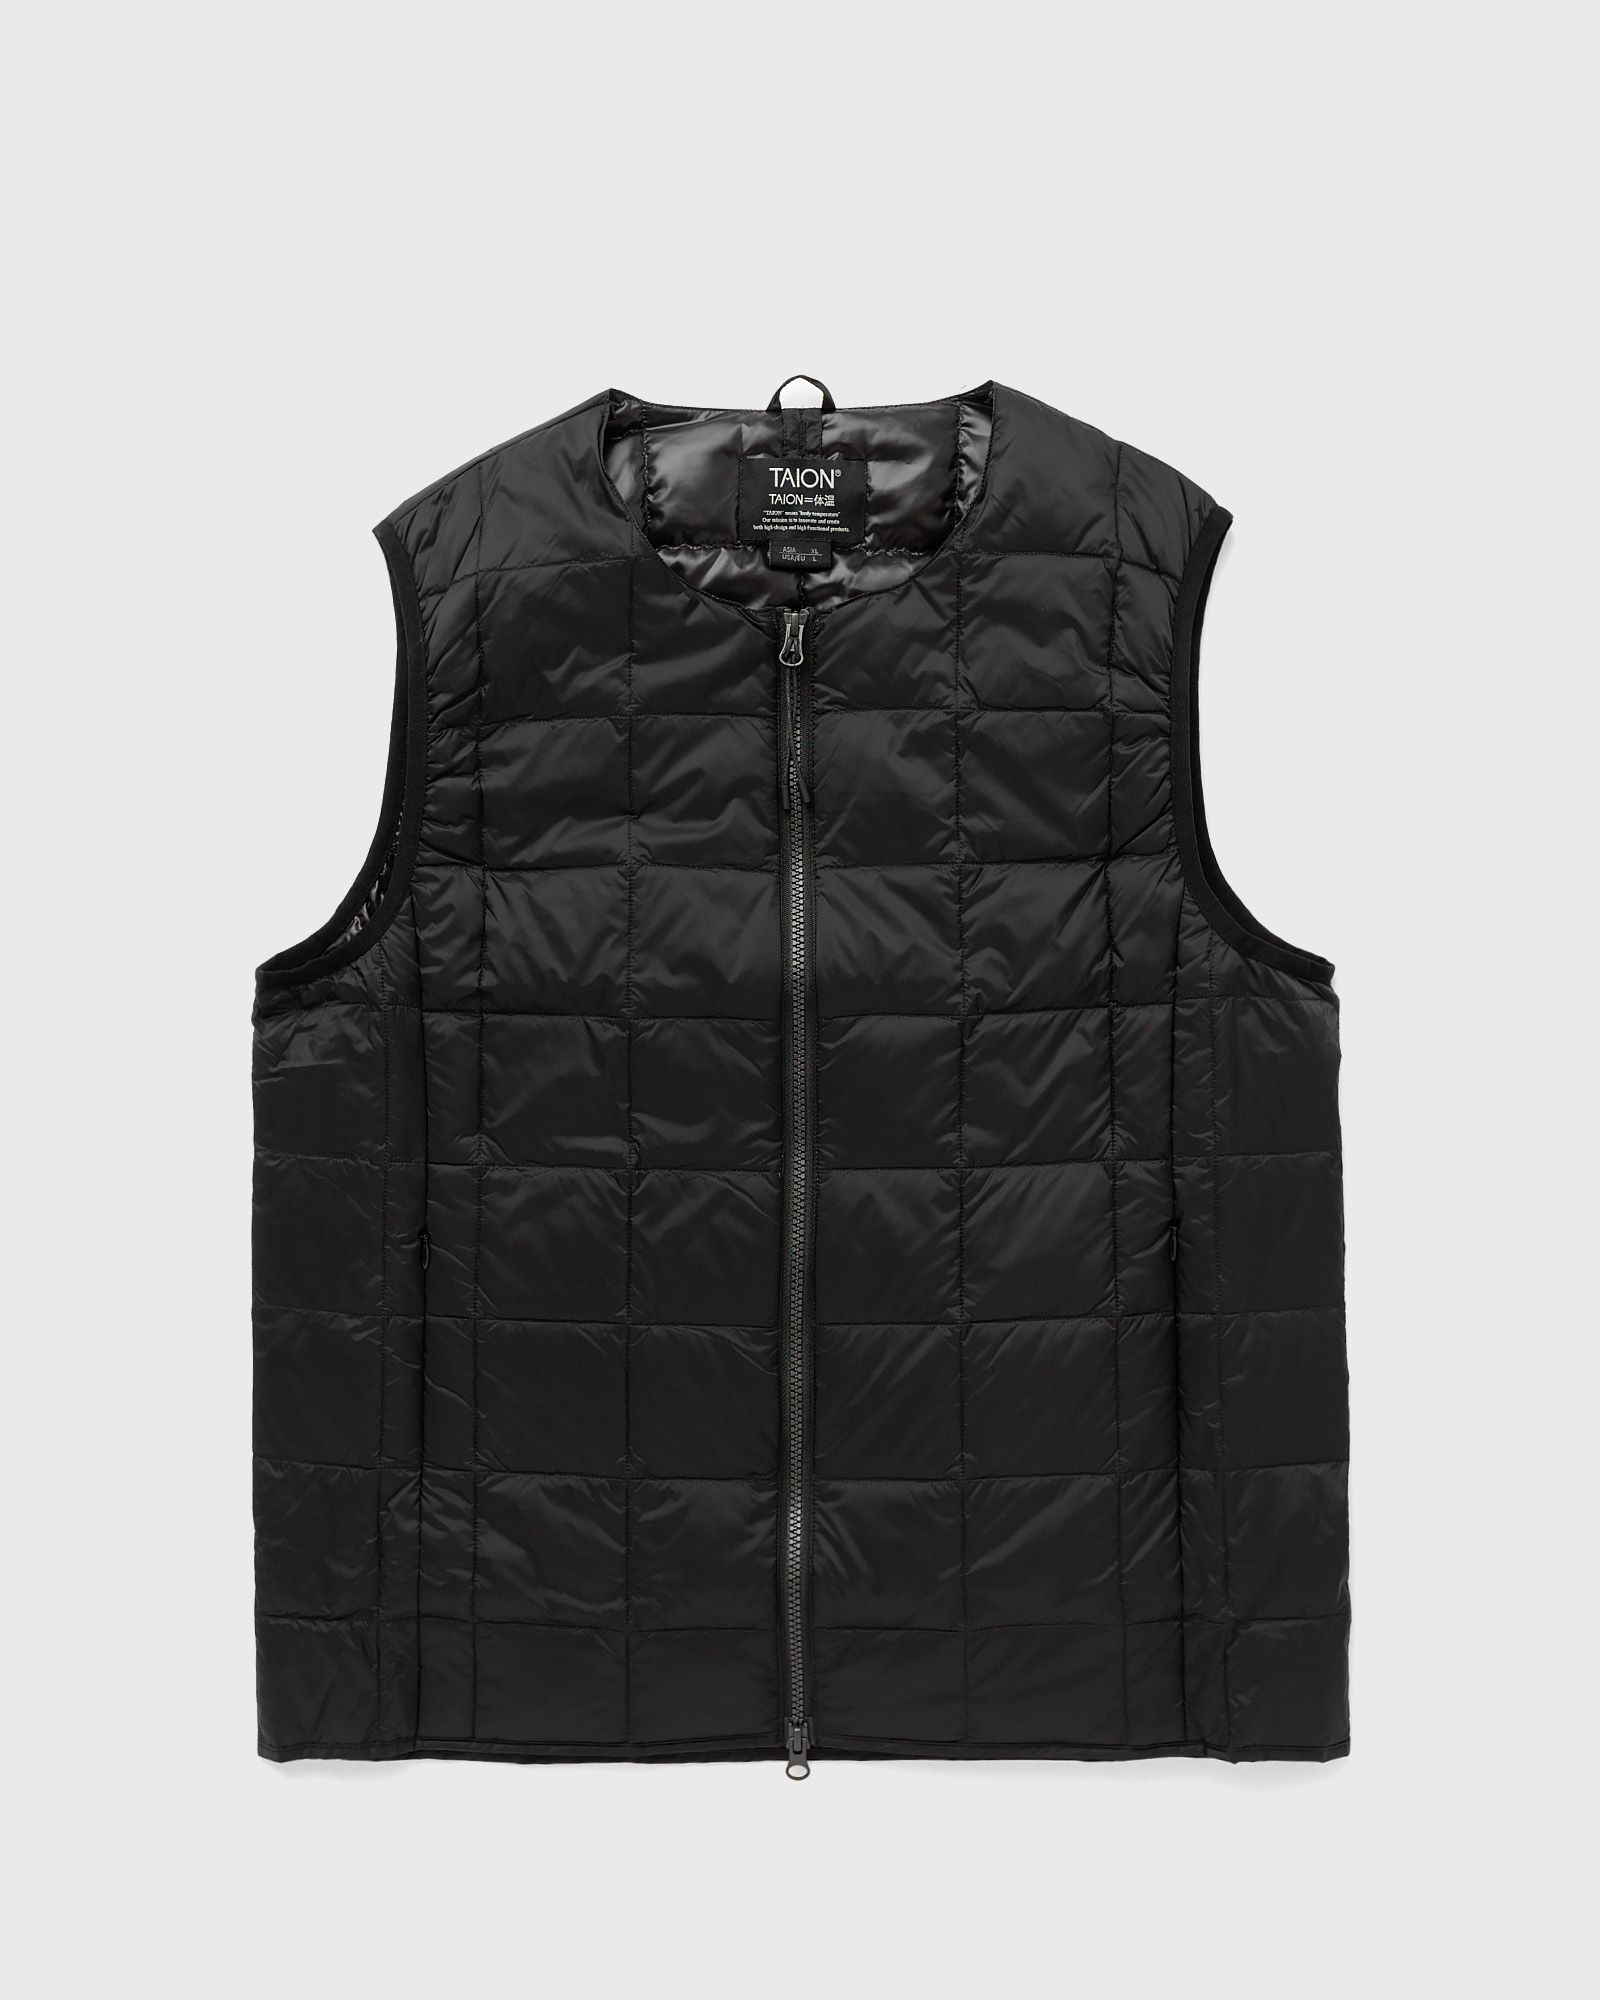 Taion - crew-neck w-zip down vest men vests black in größe:xxl